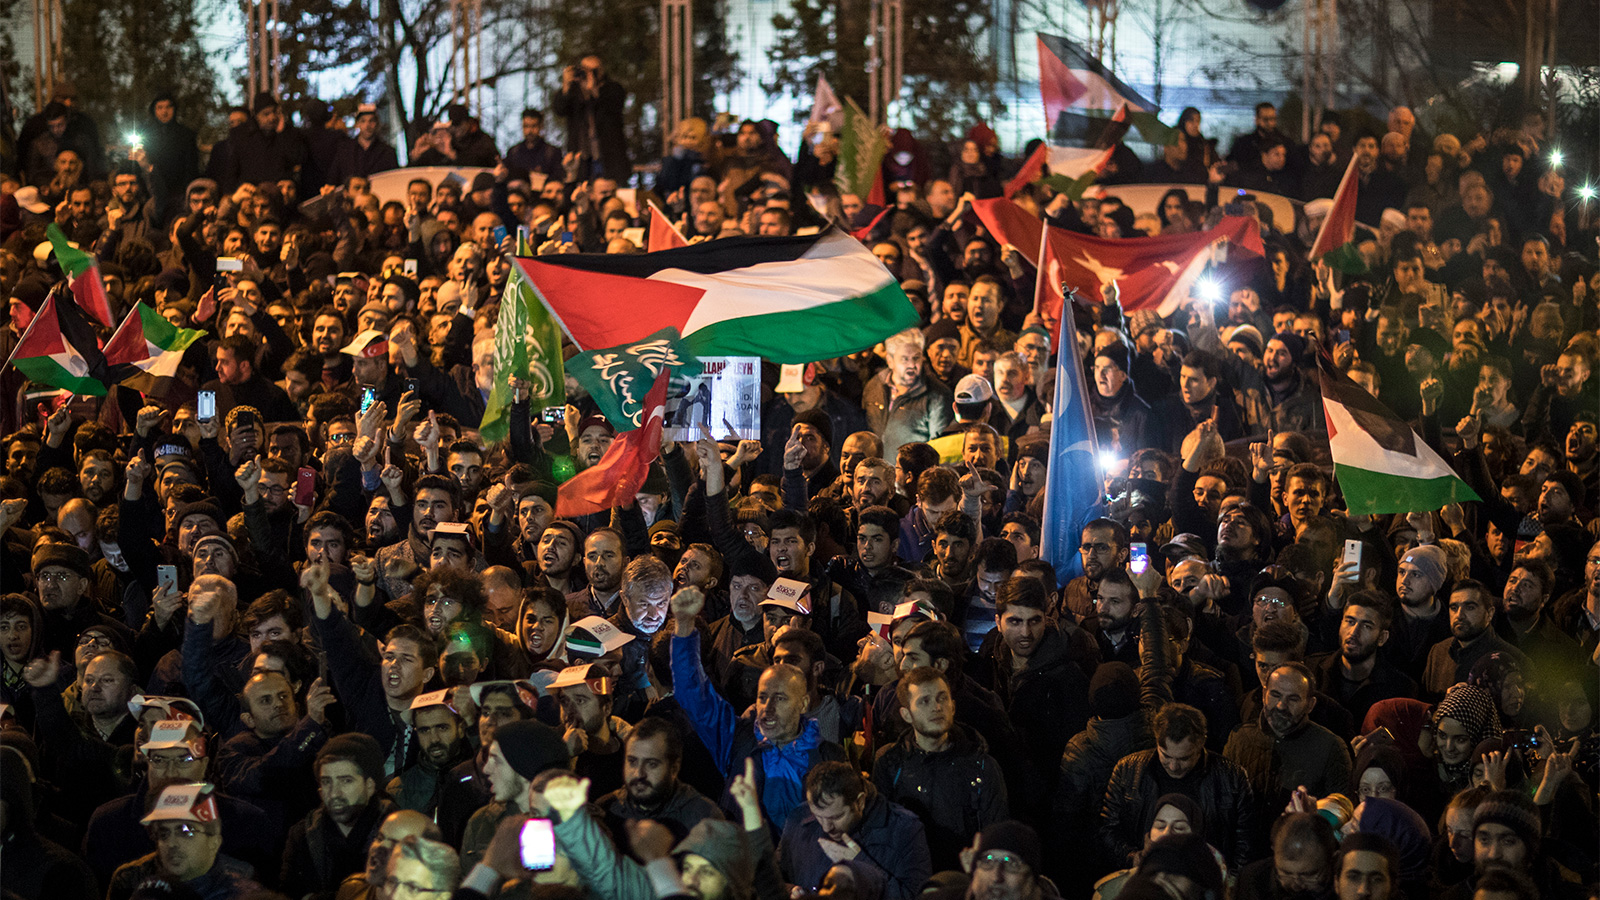 إسطنبول شهدت الليلة الماضية احتجاجات غاضبة ضد قرار الرئيس الأميركي الاعتراف بالقدس عاصمة لإسرائيل (الأوروبية)